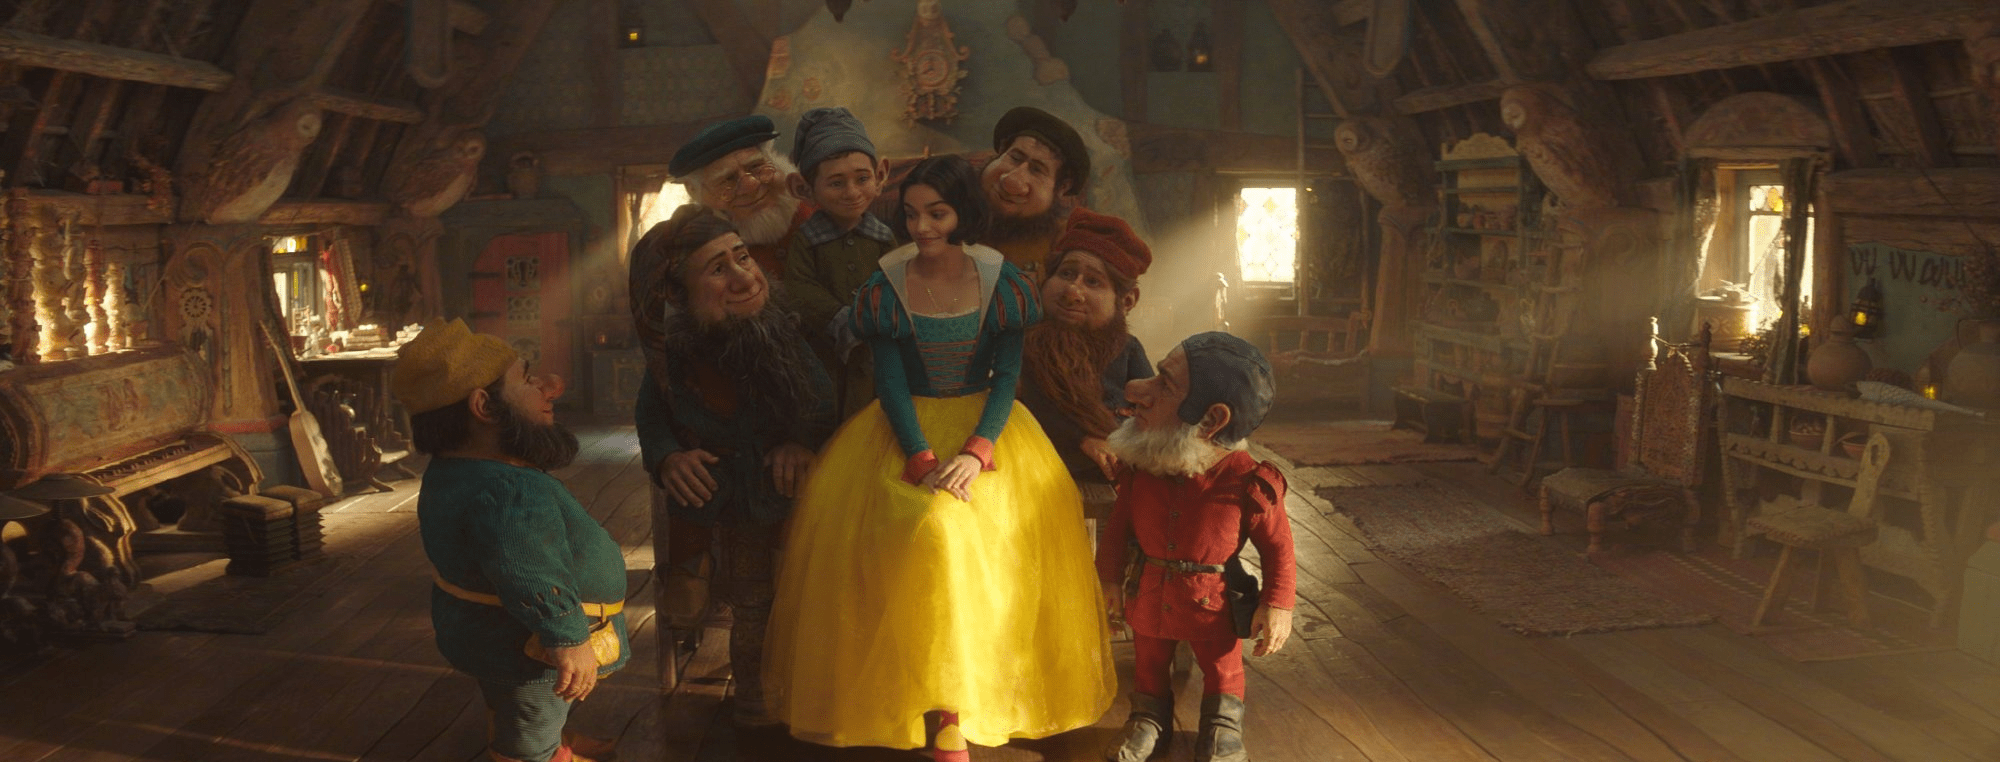 《白雪公主》真人电影首曝剧照 公主与七个小矮人同框亮相